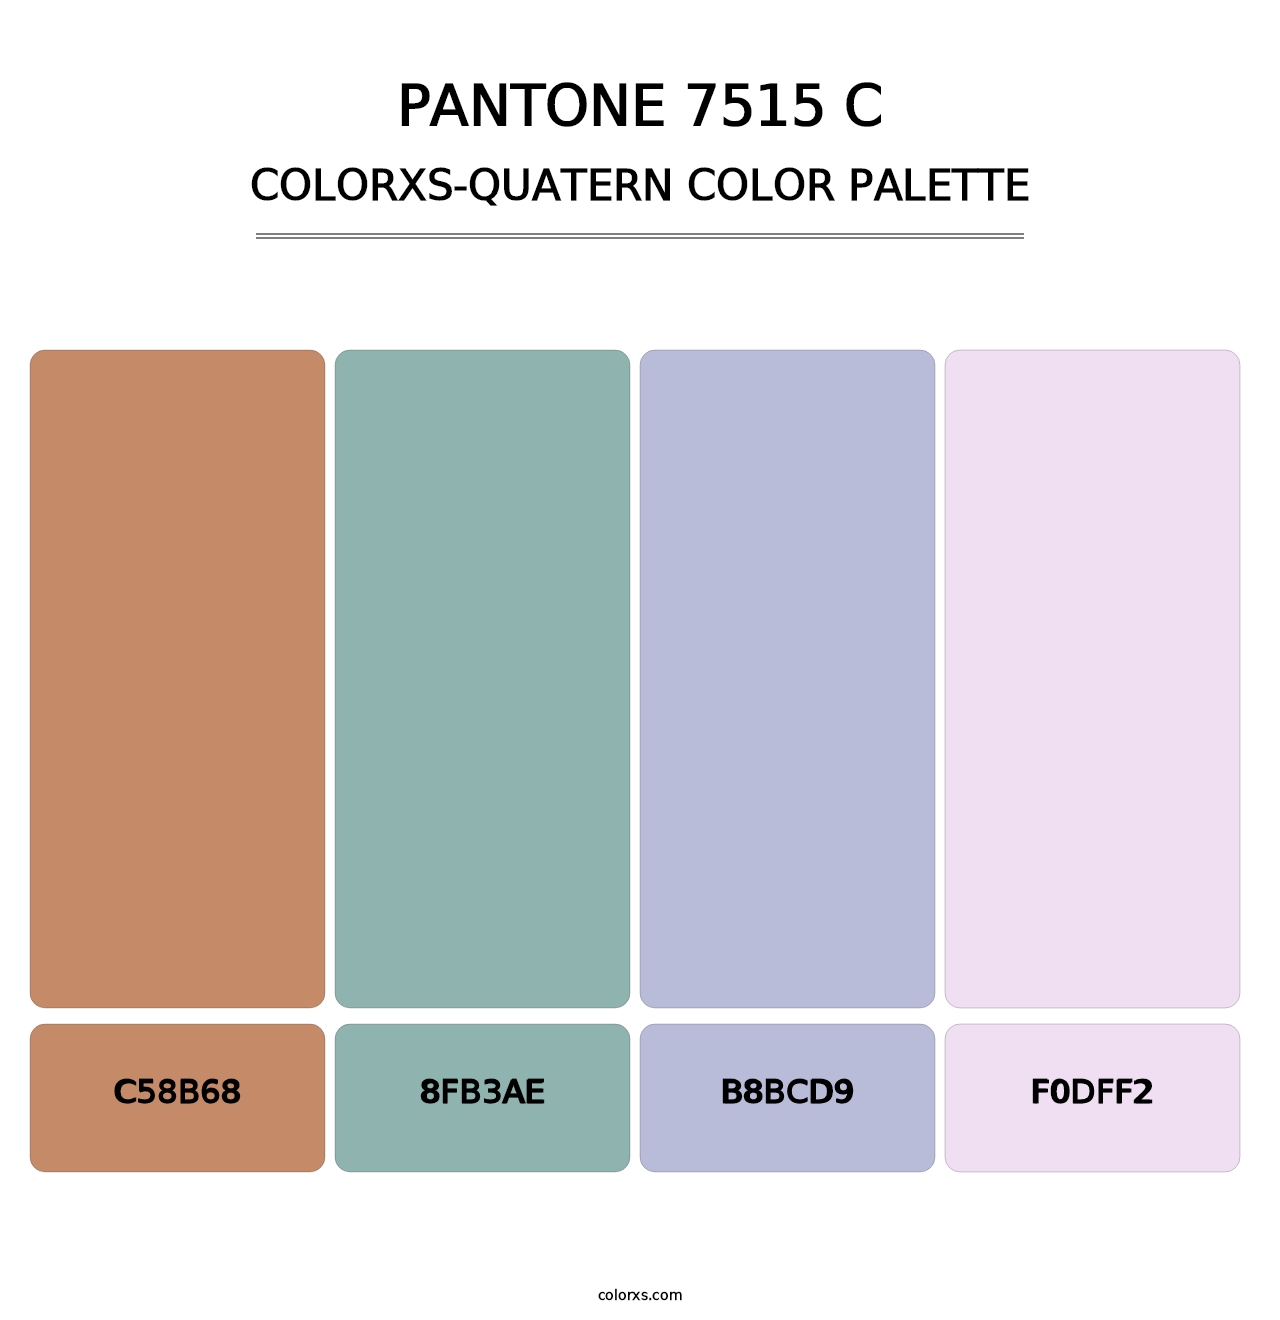 PANTONE 7515 C - Colorxs Quatern Palette